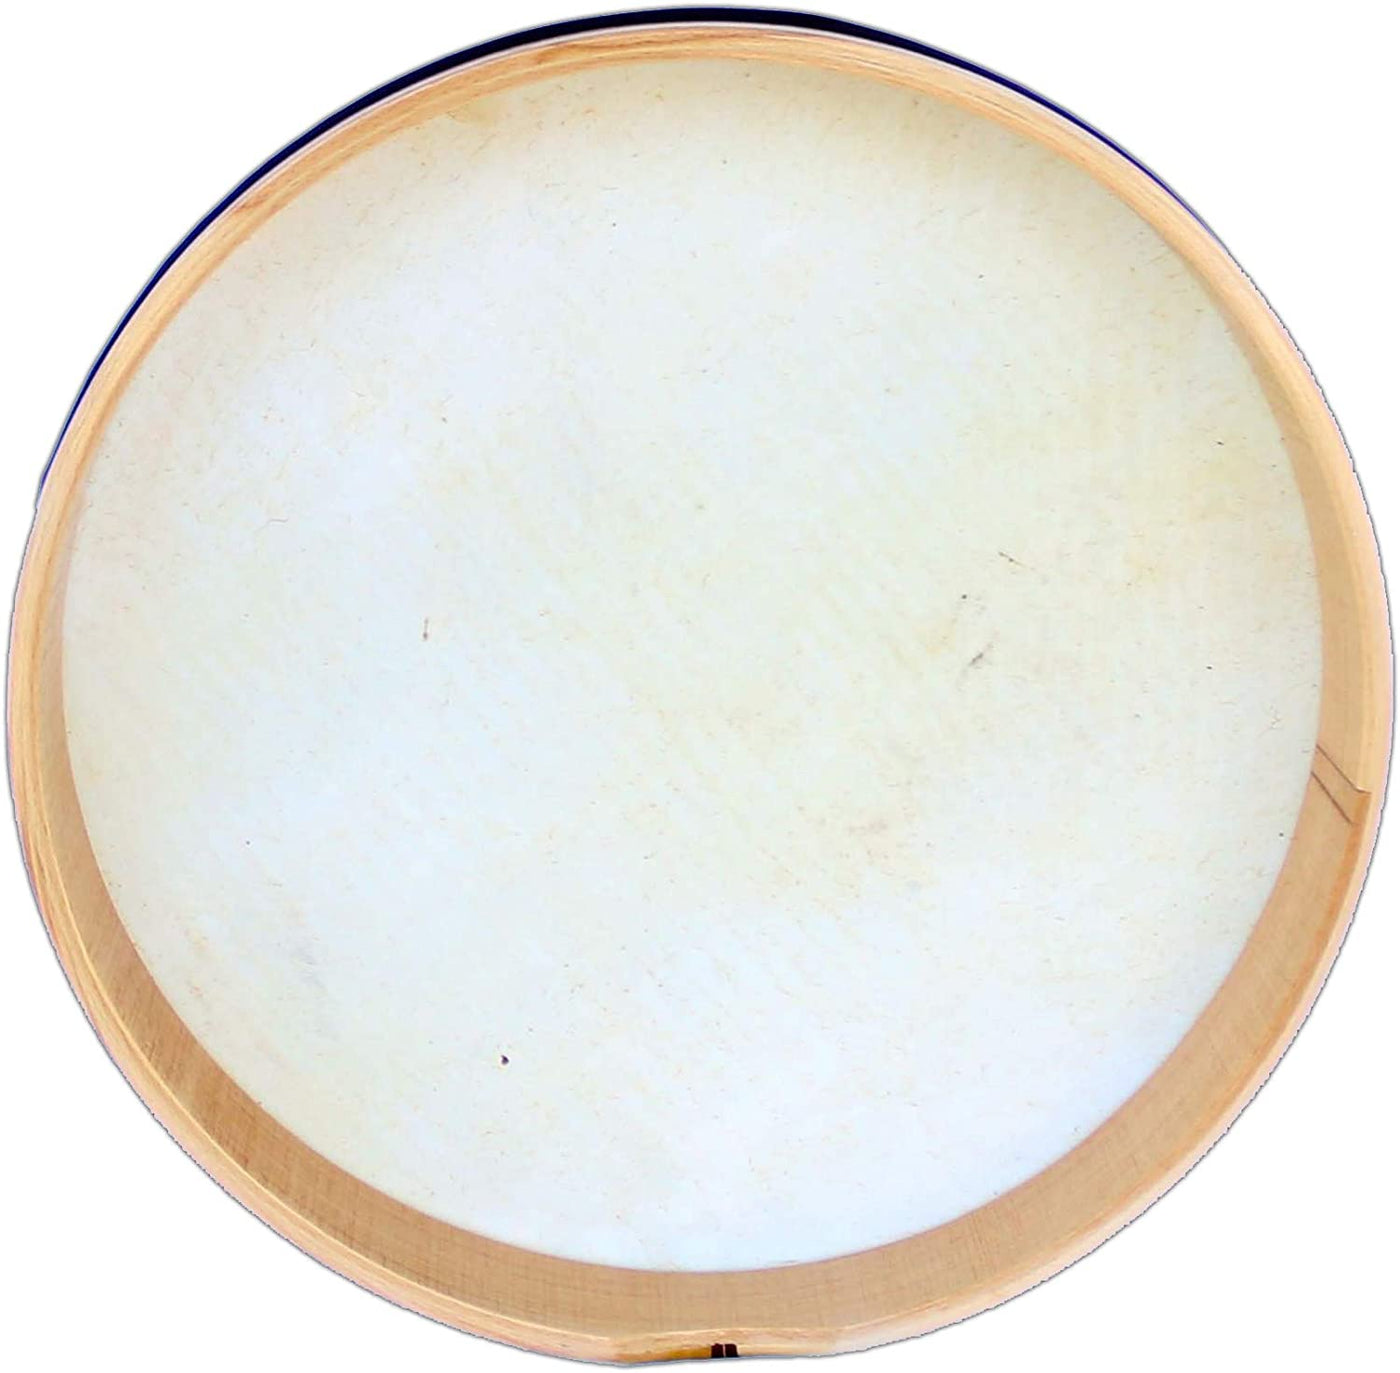 Véritable tambour à percussion Bendir en noyer turc 45 cm